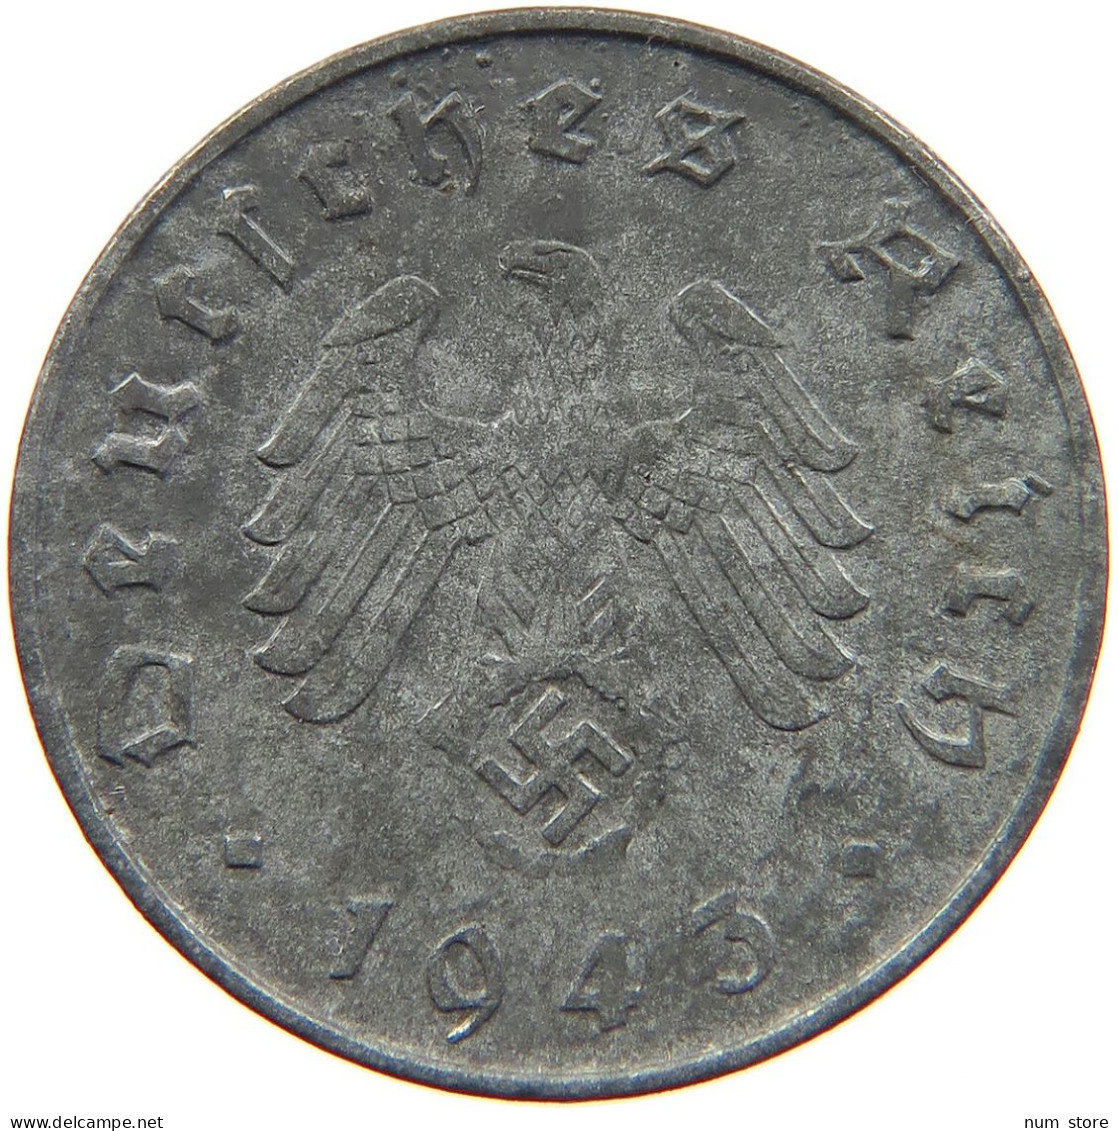 GERMANY 10 REICHSPFENNIG 1943 A #s095 0035 - 10 Reichspfennig